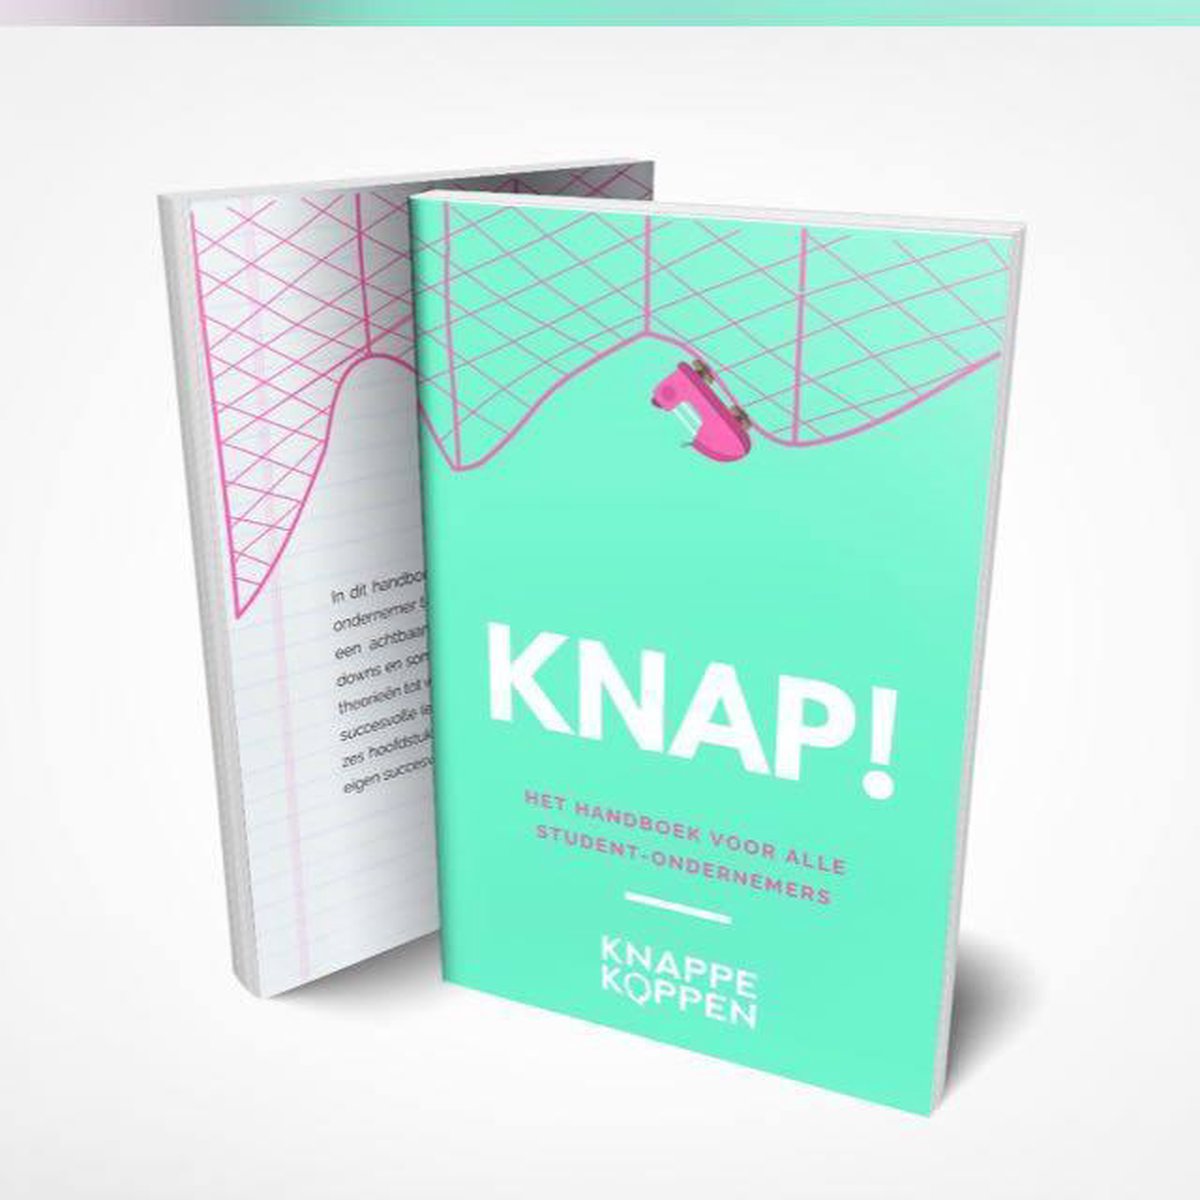 KNAP! Het Handboek Voor Alle Student Ondernemers